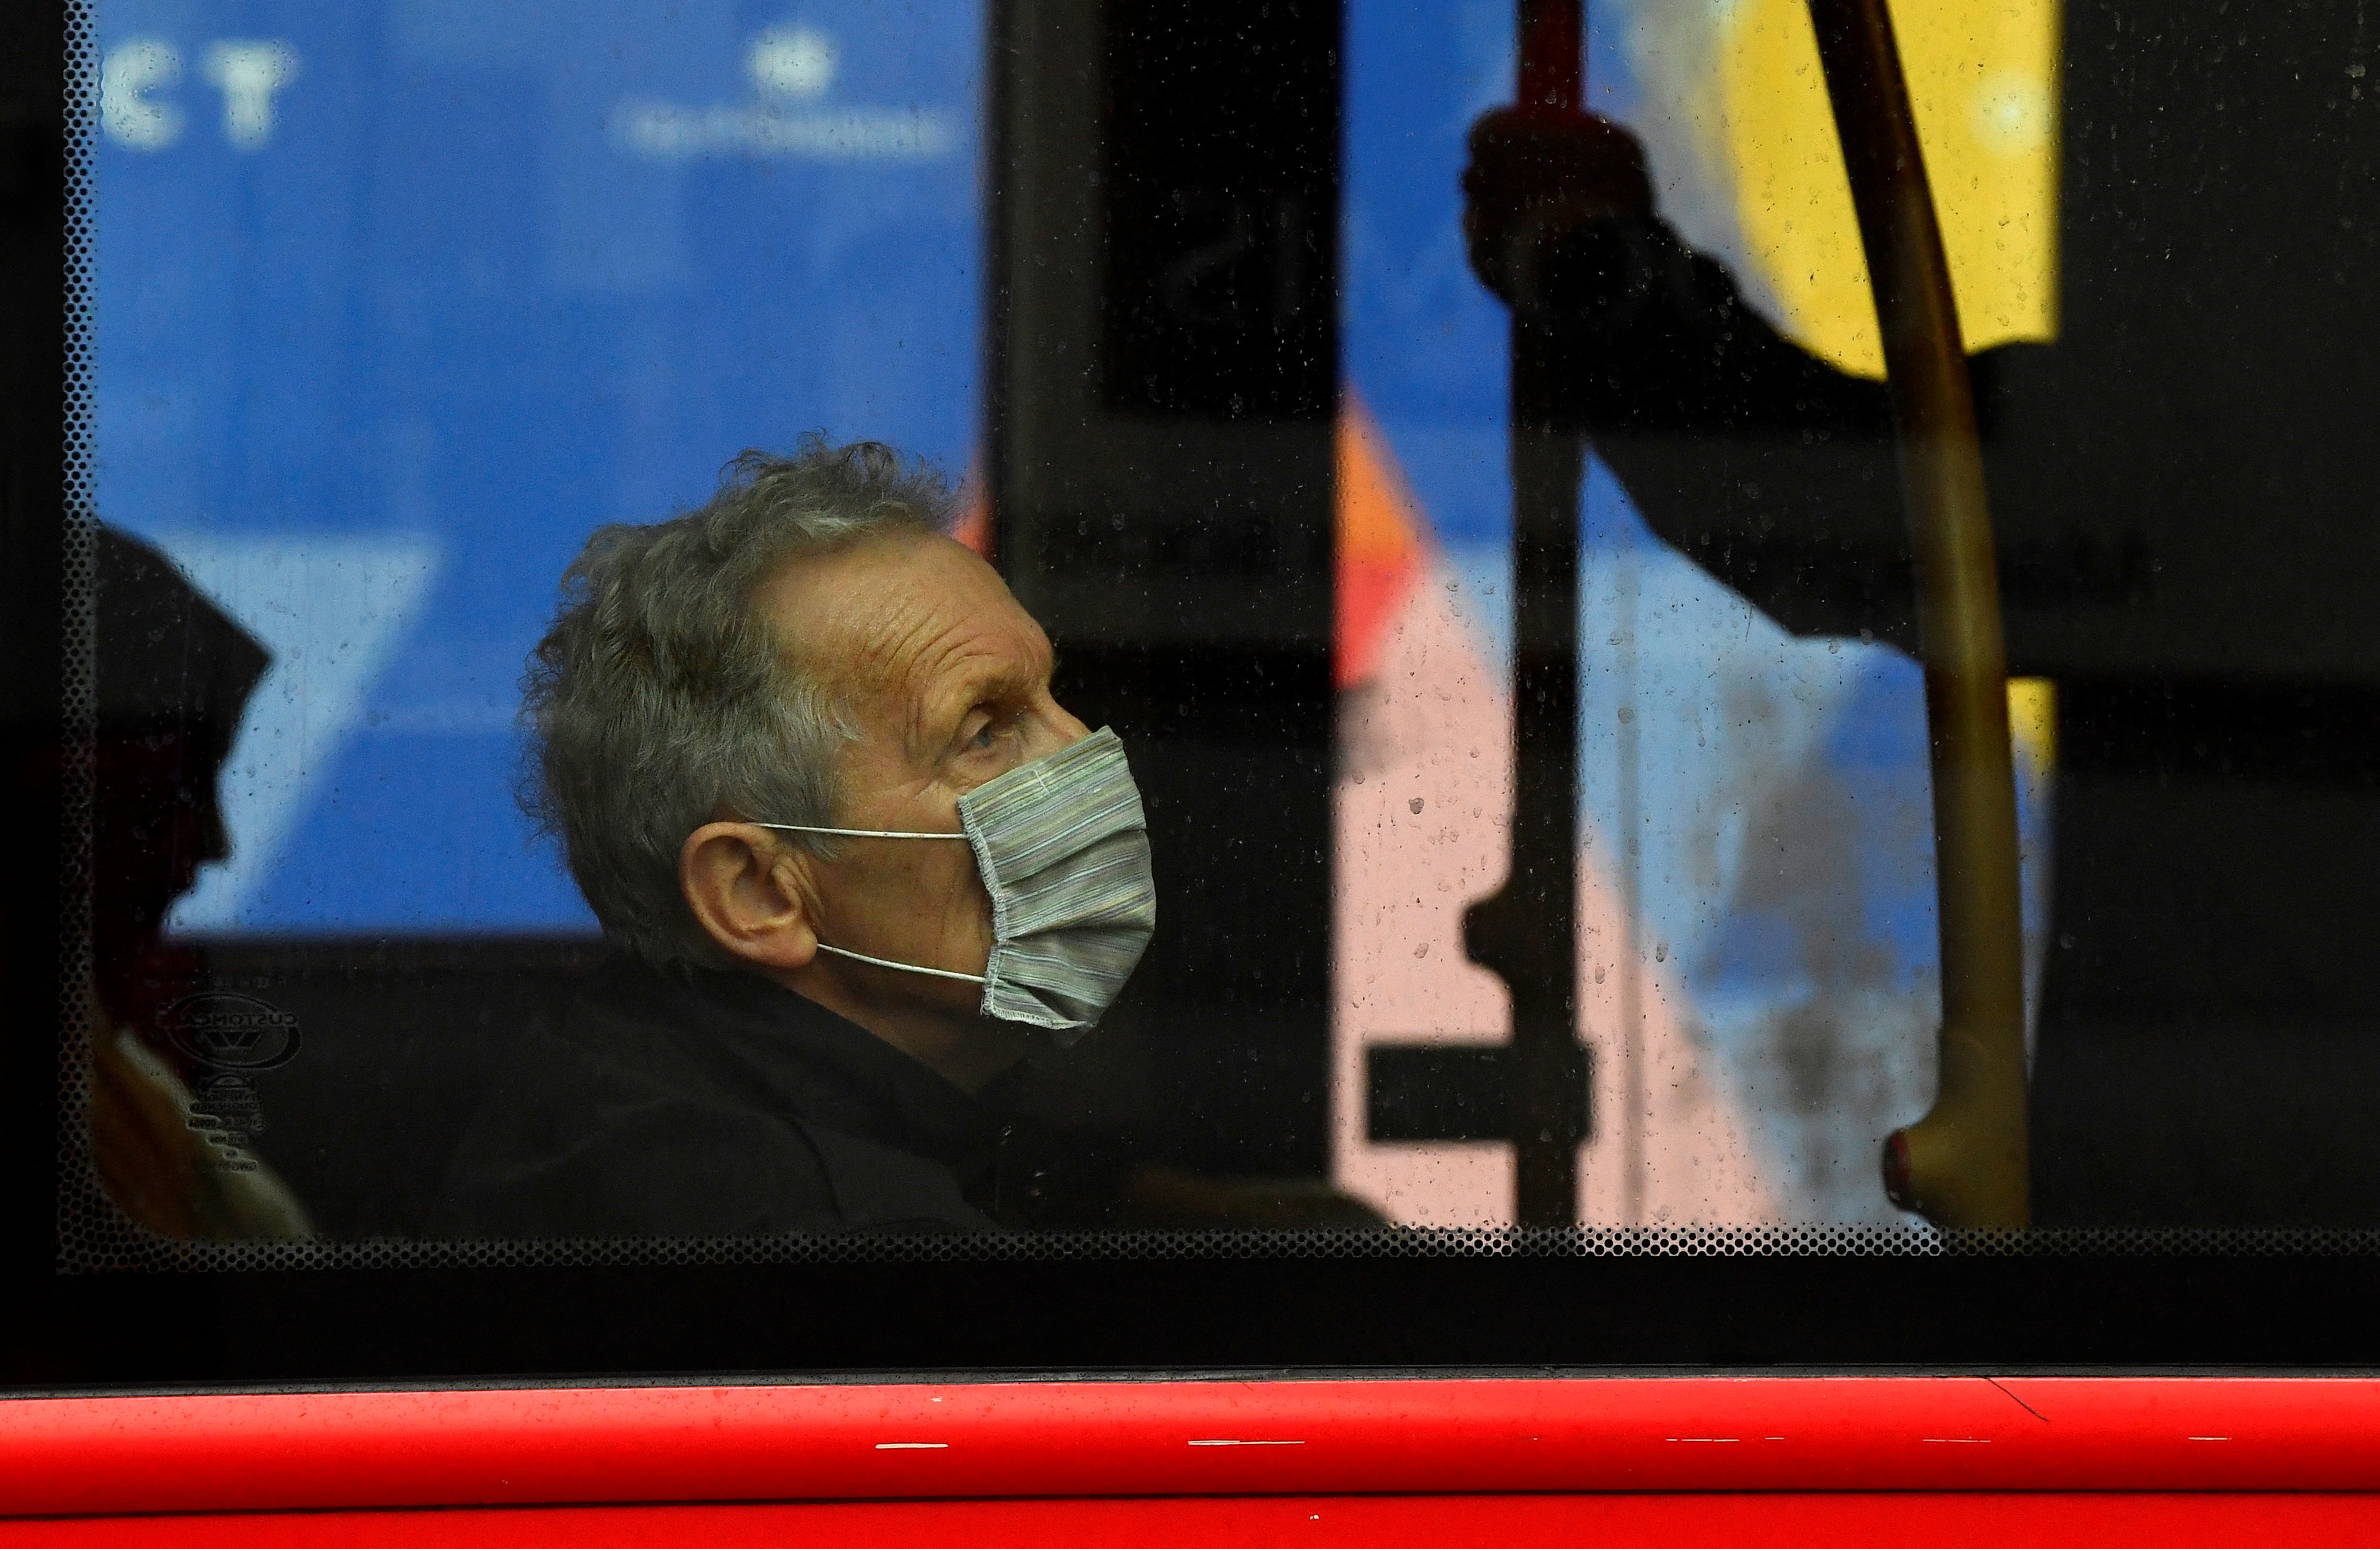 Otros medios de transporte, como los autobuses y los trenes, también son espacios de riesgo de contagio (REUTERS/Toby Melville)